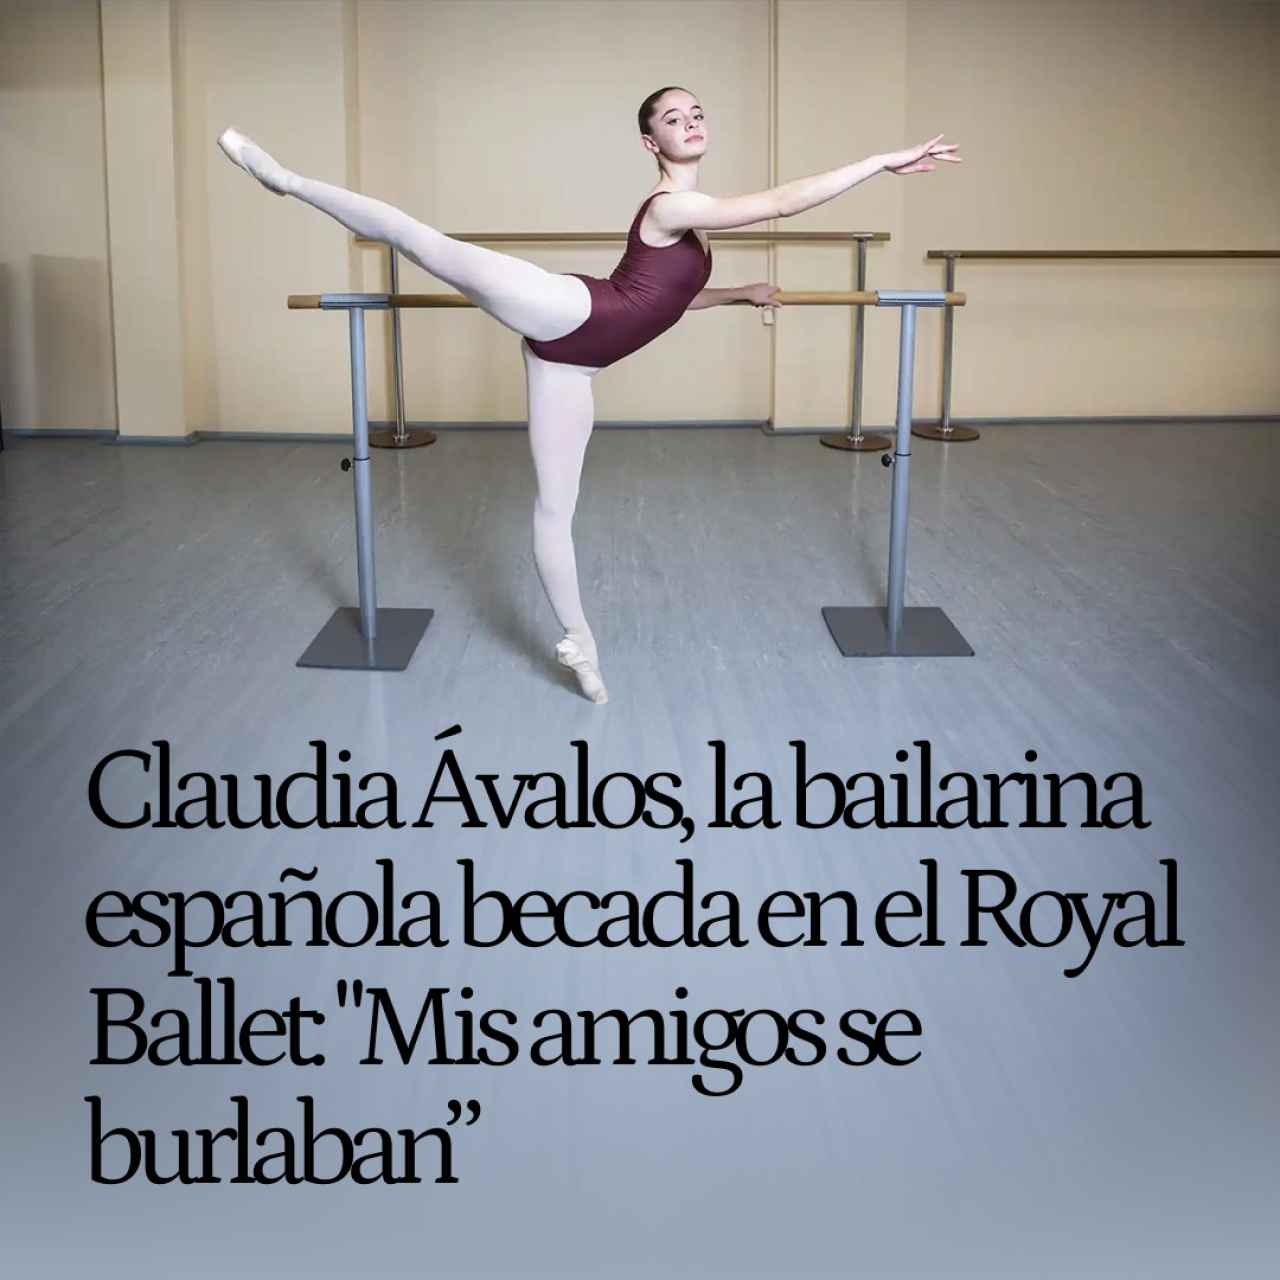 Claudia Ávalos, de 15 años, la bailarina española becada en el Royal Ballet: "Mis amigos se burlaban"